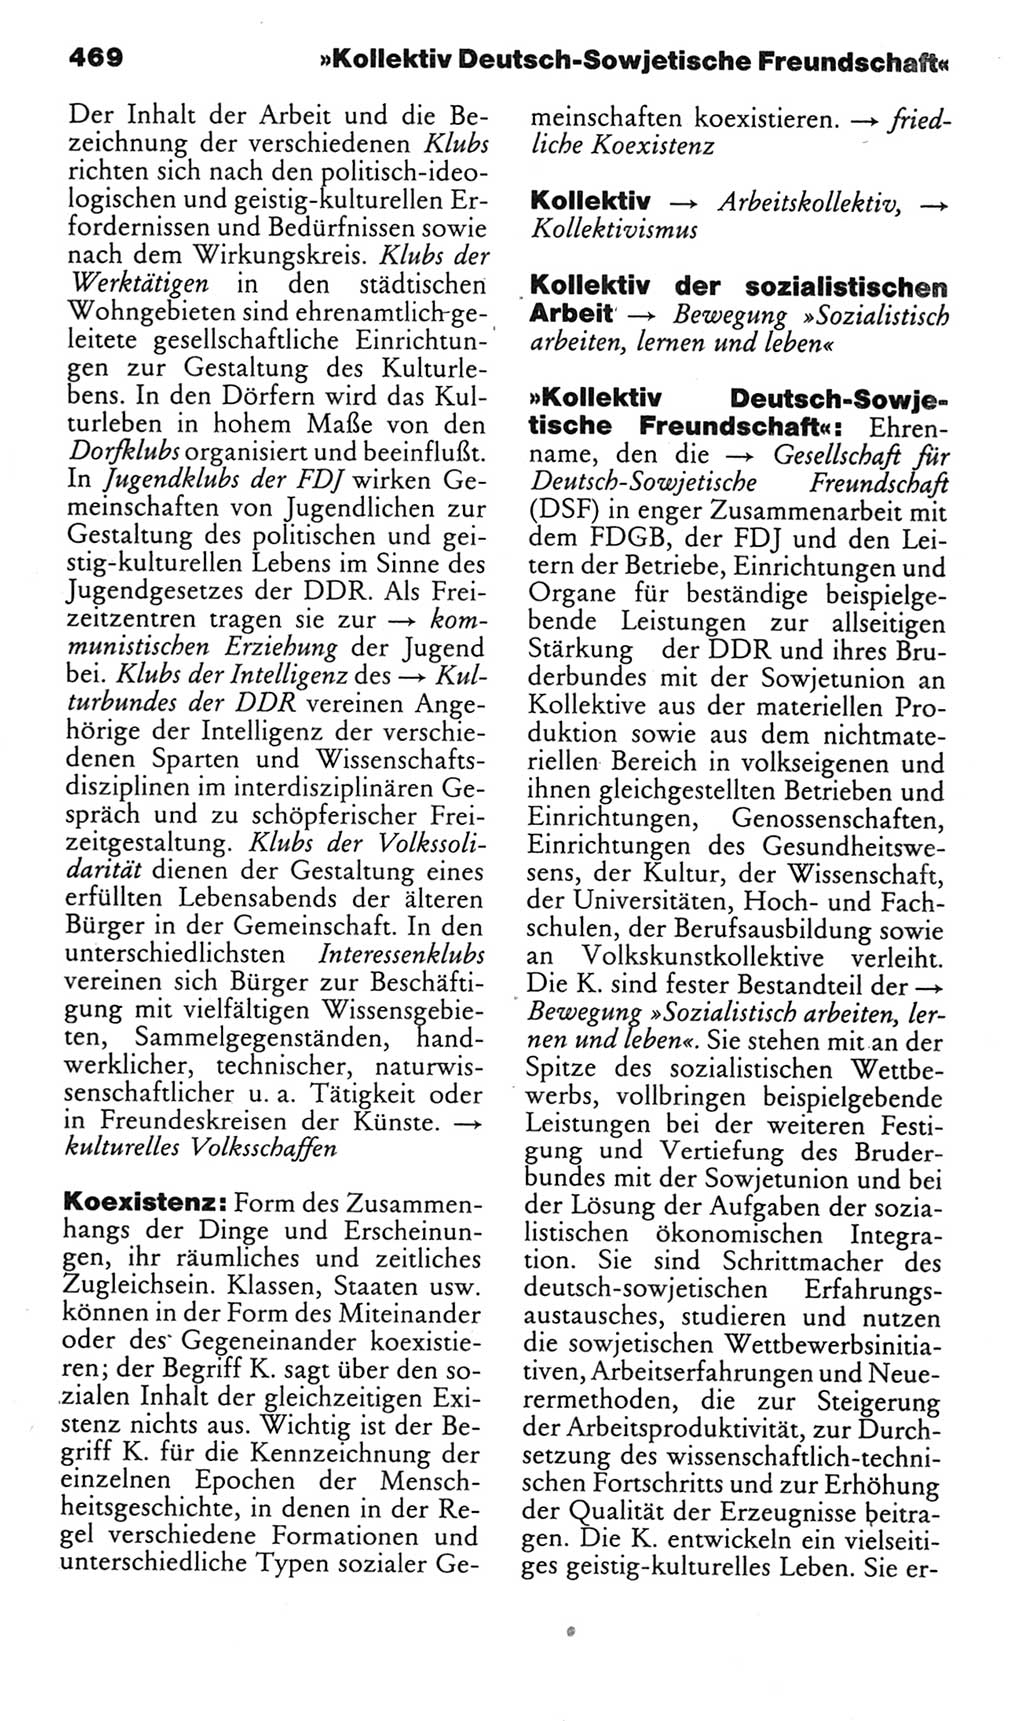 Kleines politisches Wörterbuch [Deutsche Demokratische Republik (DDR)] 1985, Seite 469 (Kl. pol. Wb. DDR 1985, S. 469)